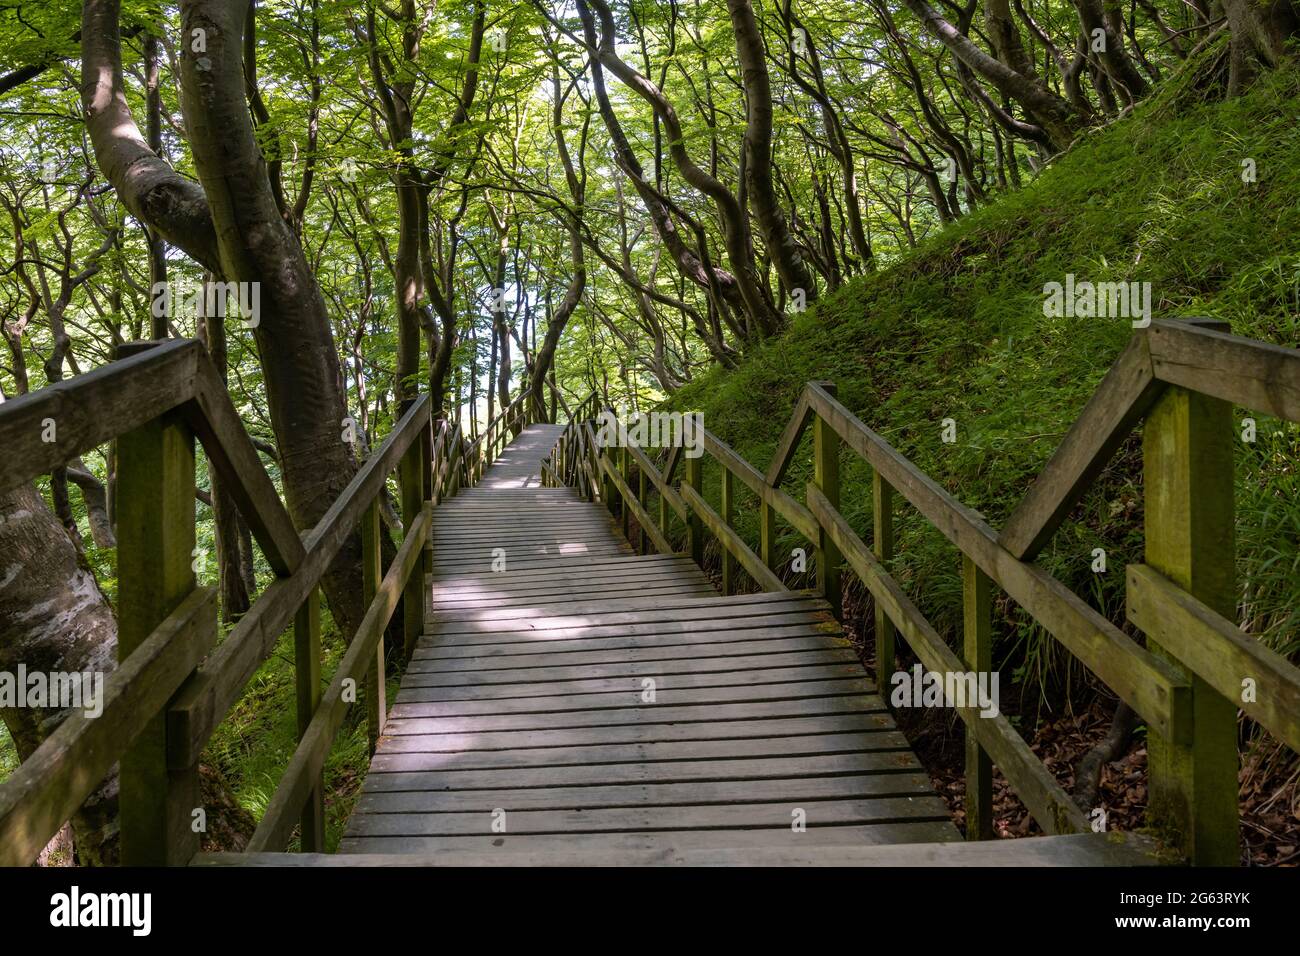 Une longue promenade en bois et des escaliers menant à l'océan dans une forêt verdoyante luxuriante Banque D'Images